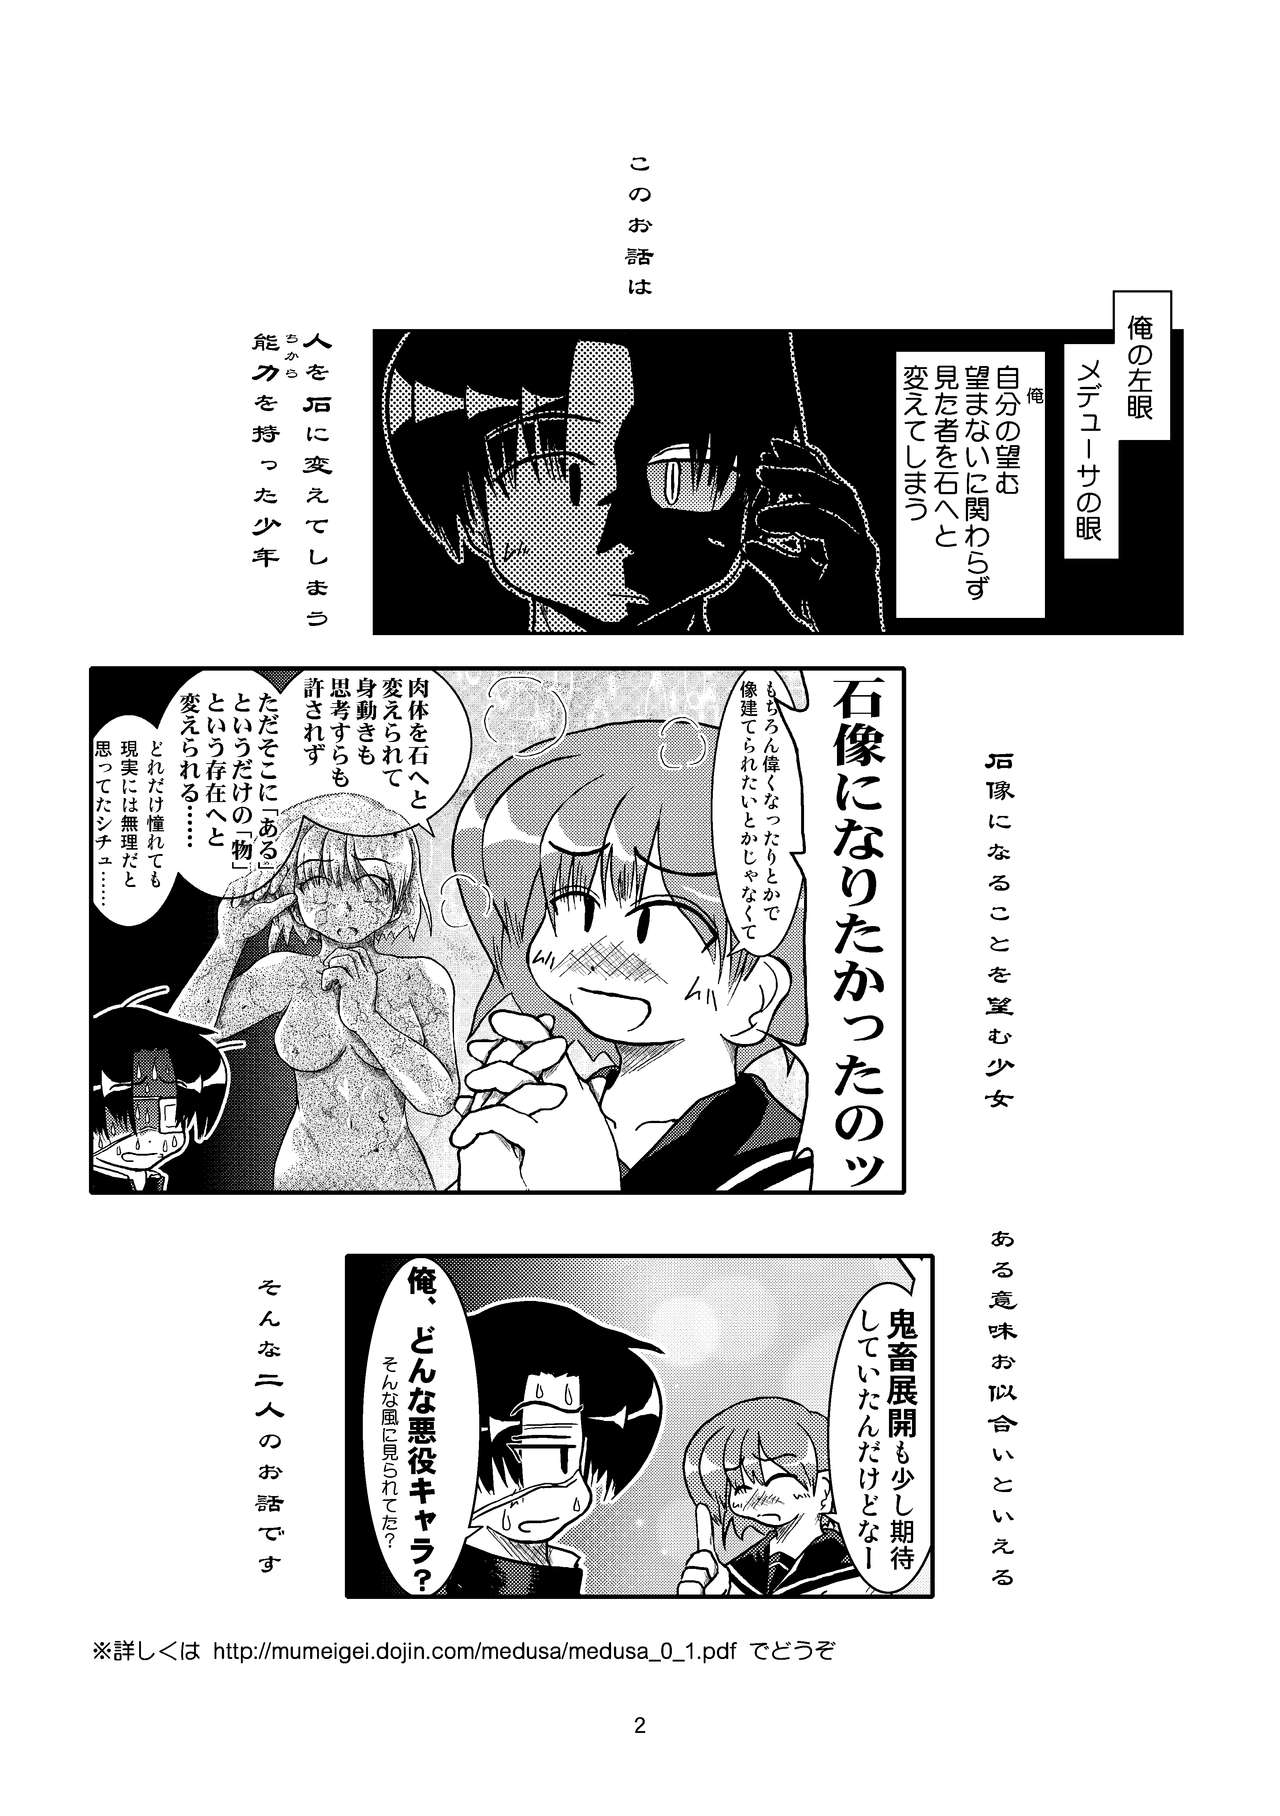 [Mumeigei (Ruho Shinobu)] Ishi ni Naru Musume Vol. 0.9 [Digital] 3